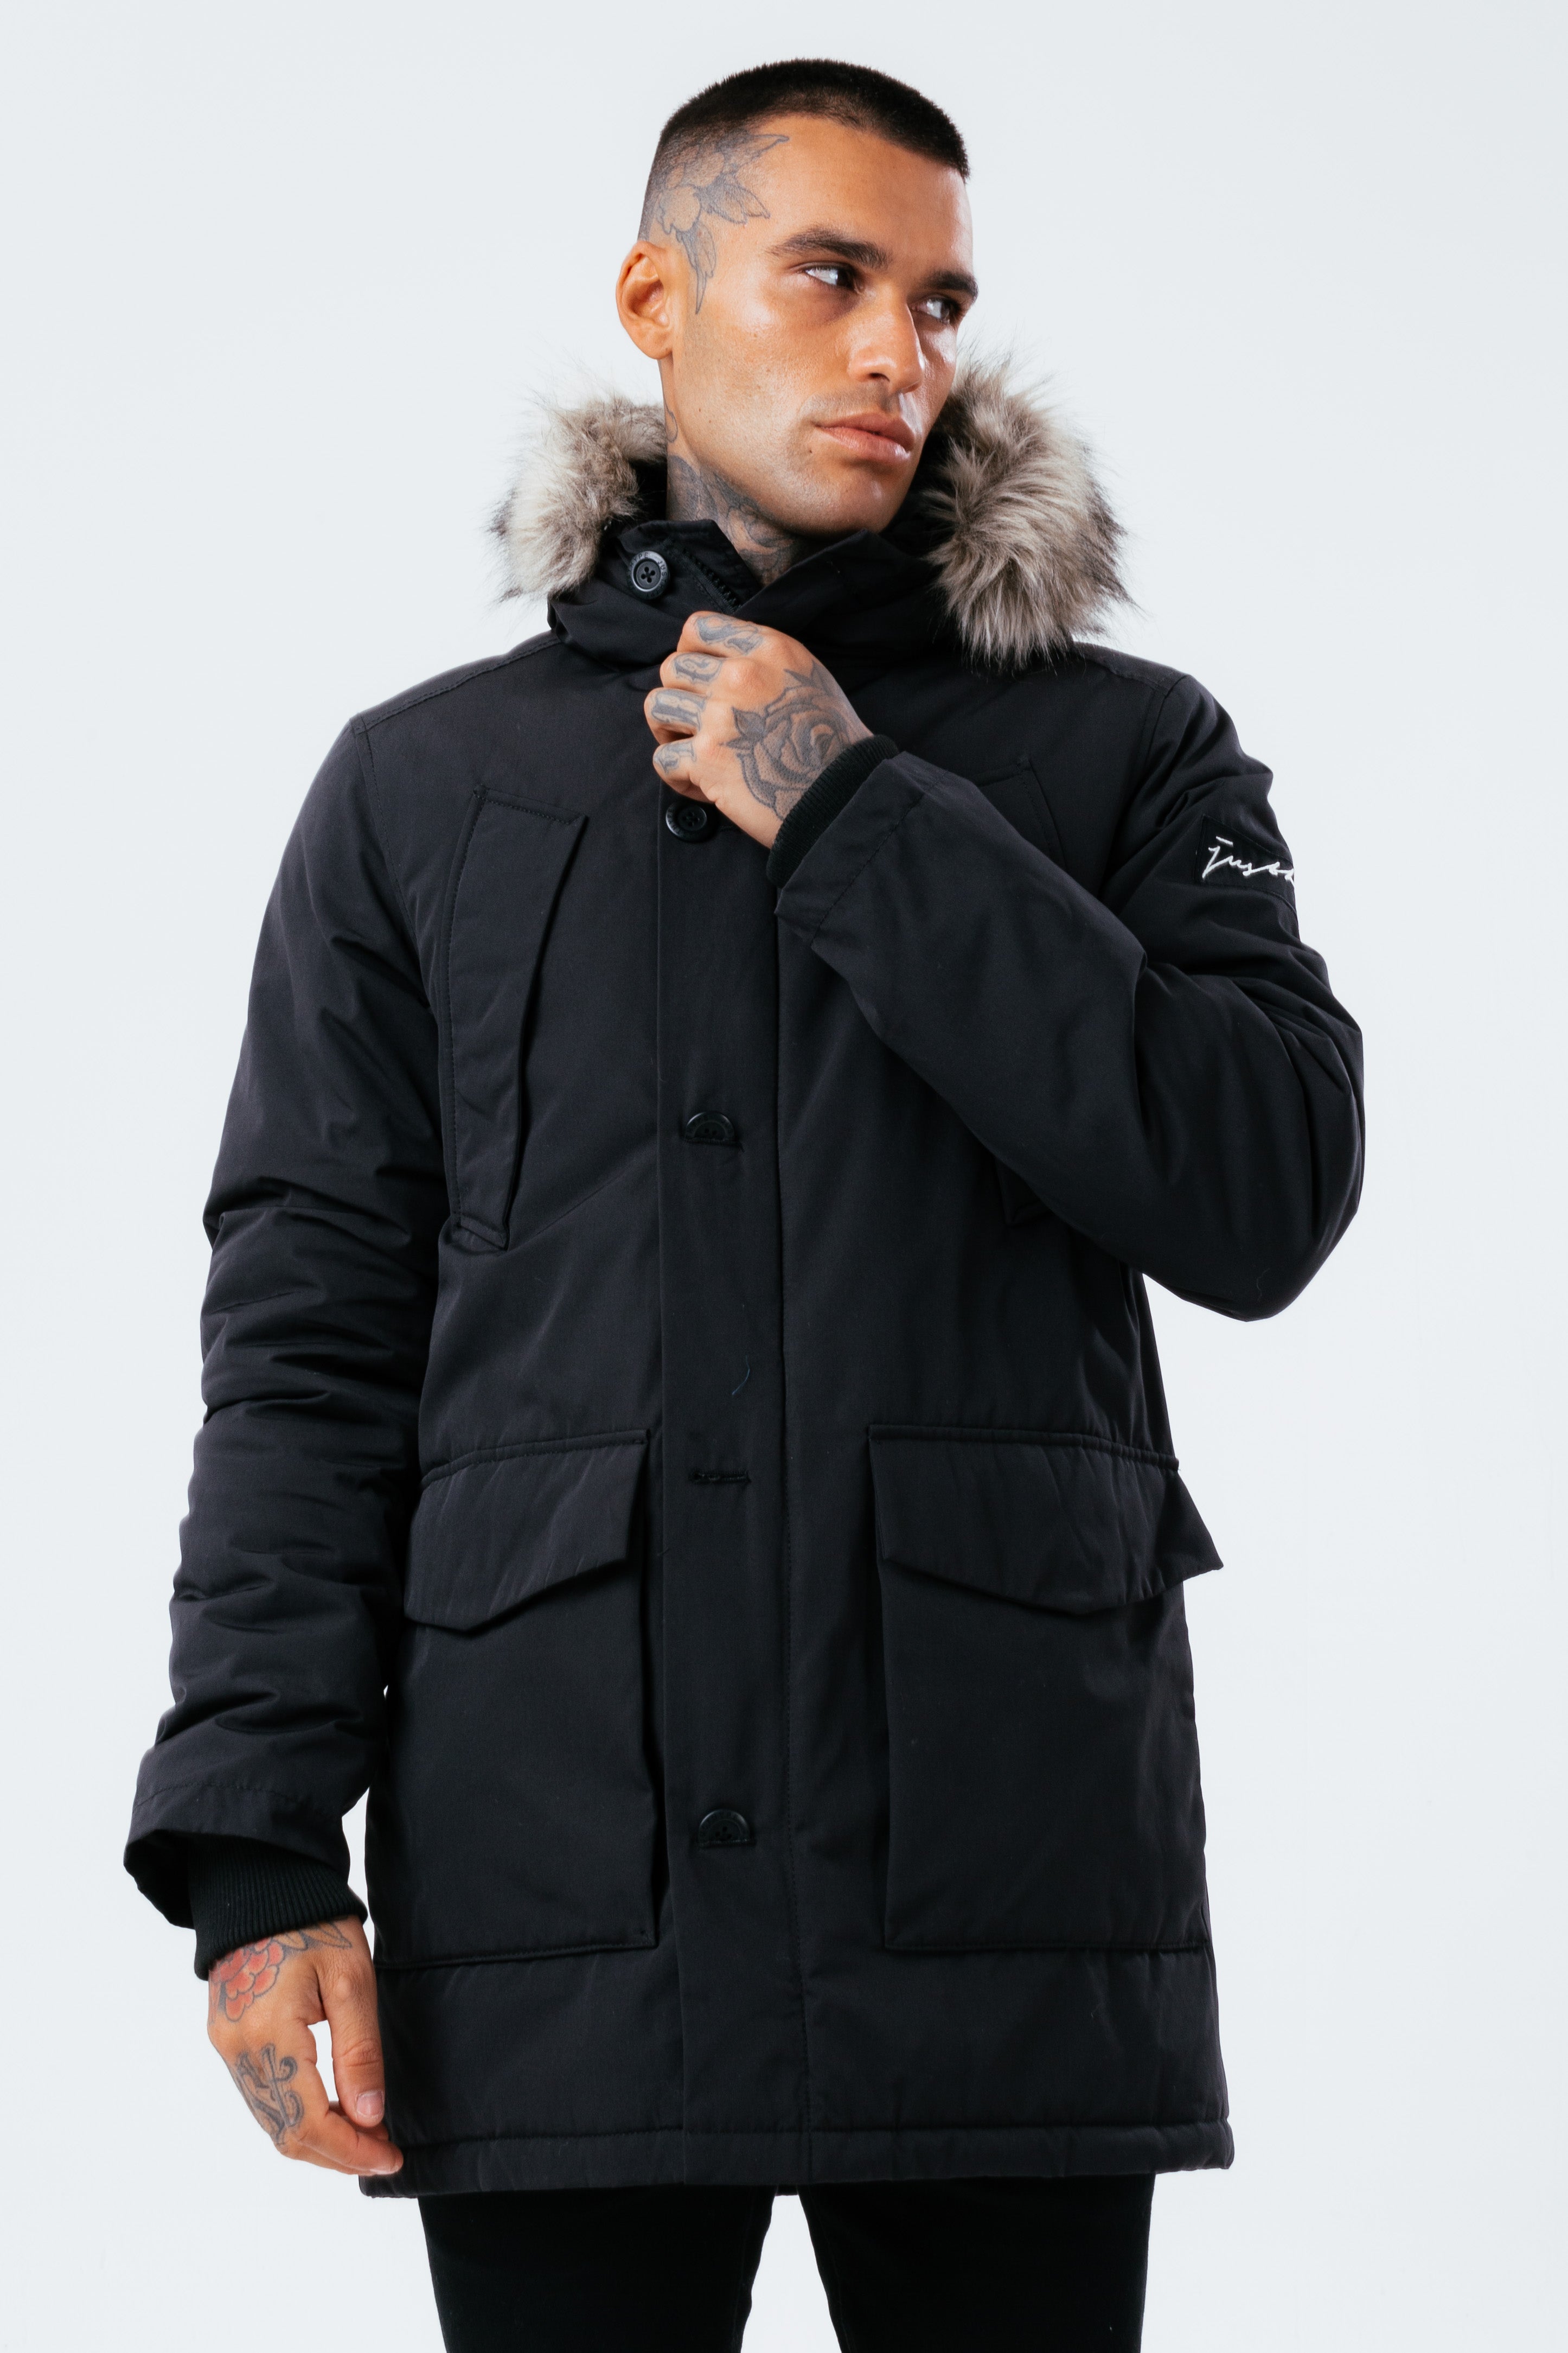 hype black luxe longline men’s parka jacket